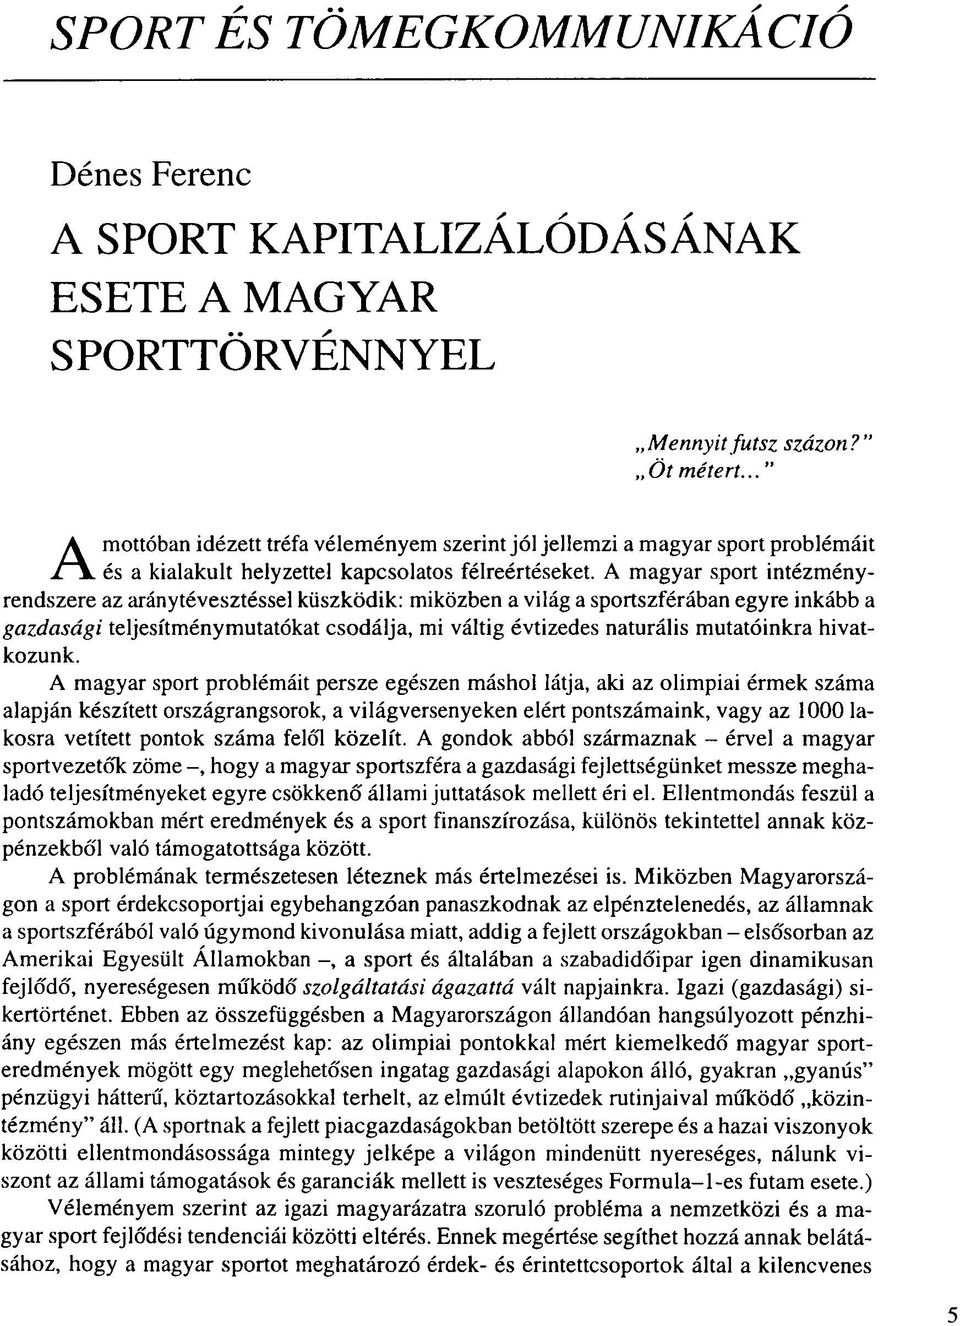 A magyar sport intézményrendszere az aránytévesztéssel küszködik: miközben a világ a sportszférában egyre inkább a gazdasági teljesítménymutatókat csodálja, mi váltig évtizedes naturális mutatóinkra